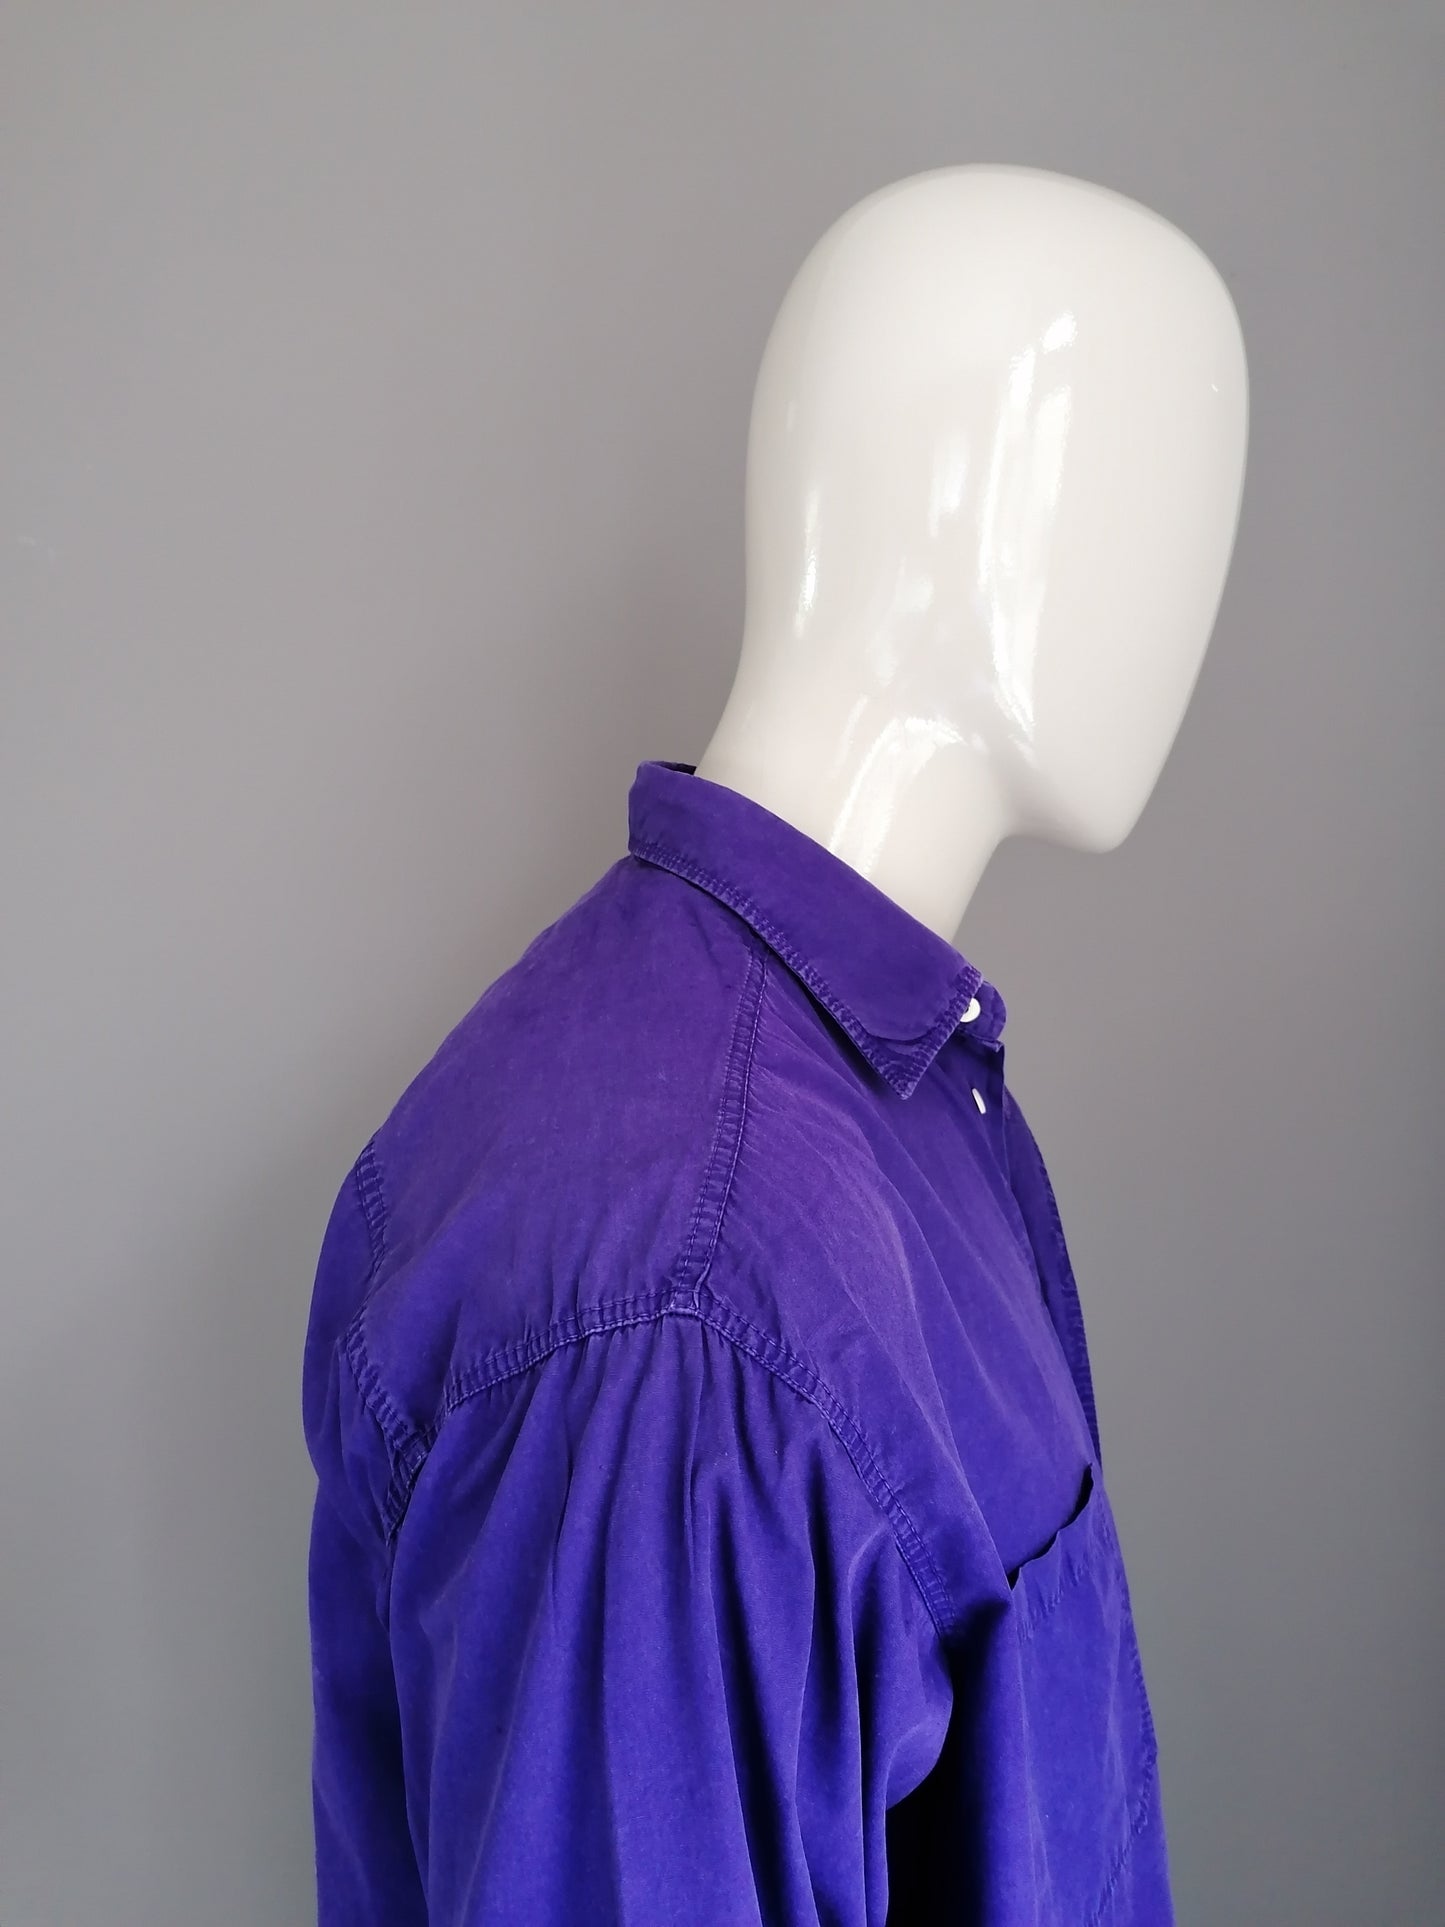 Camisa de reproducción de la vendimia. Color púrpura. Tamaño XXL / 2XL.